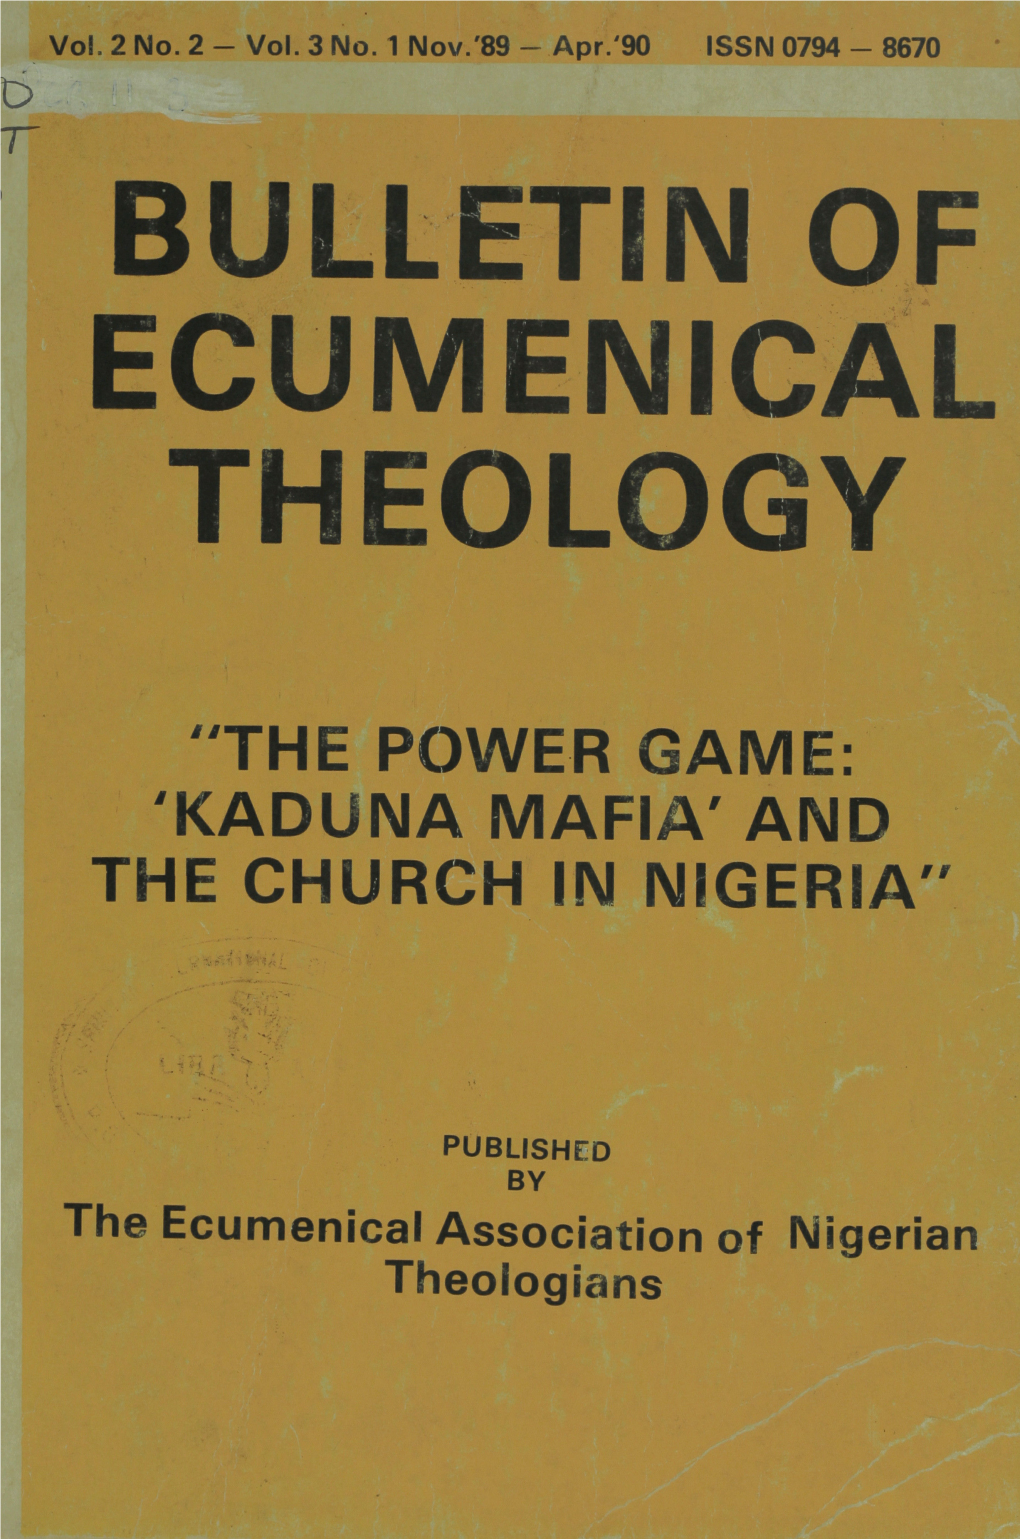 Kaduna Mafia and the Church in Nigeria